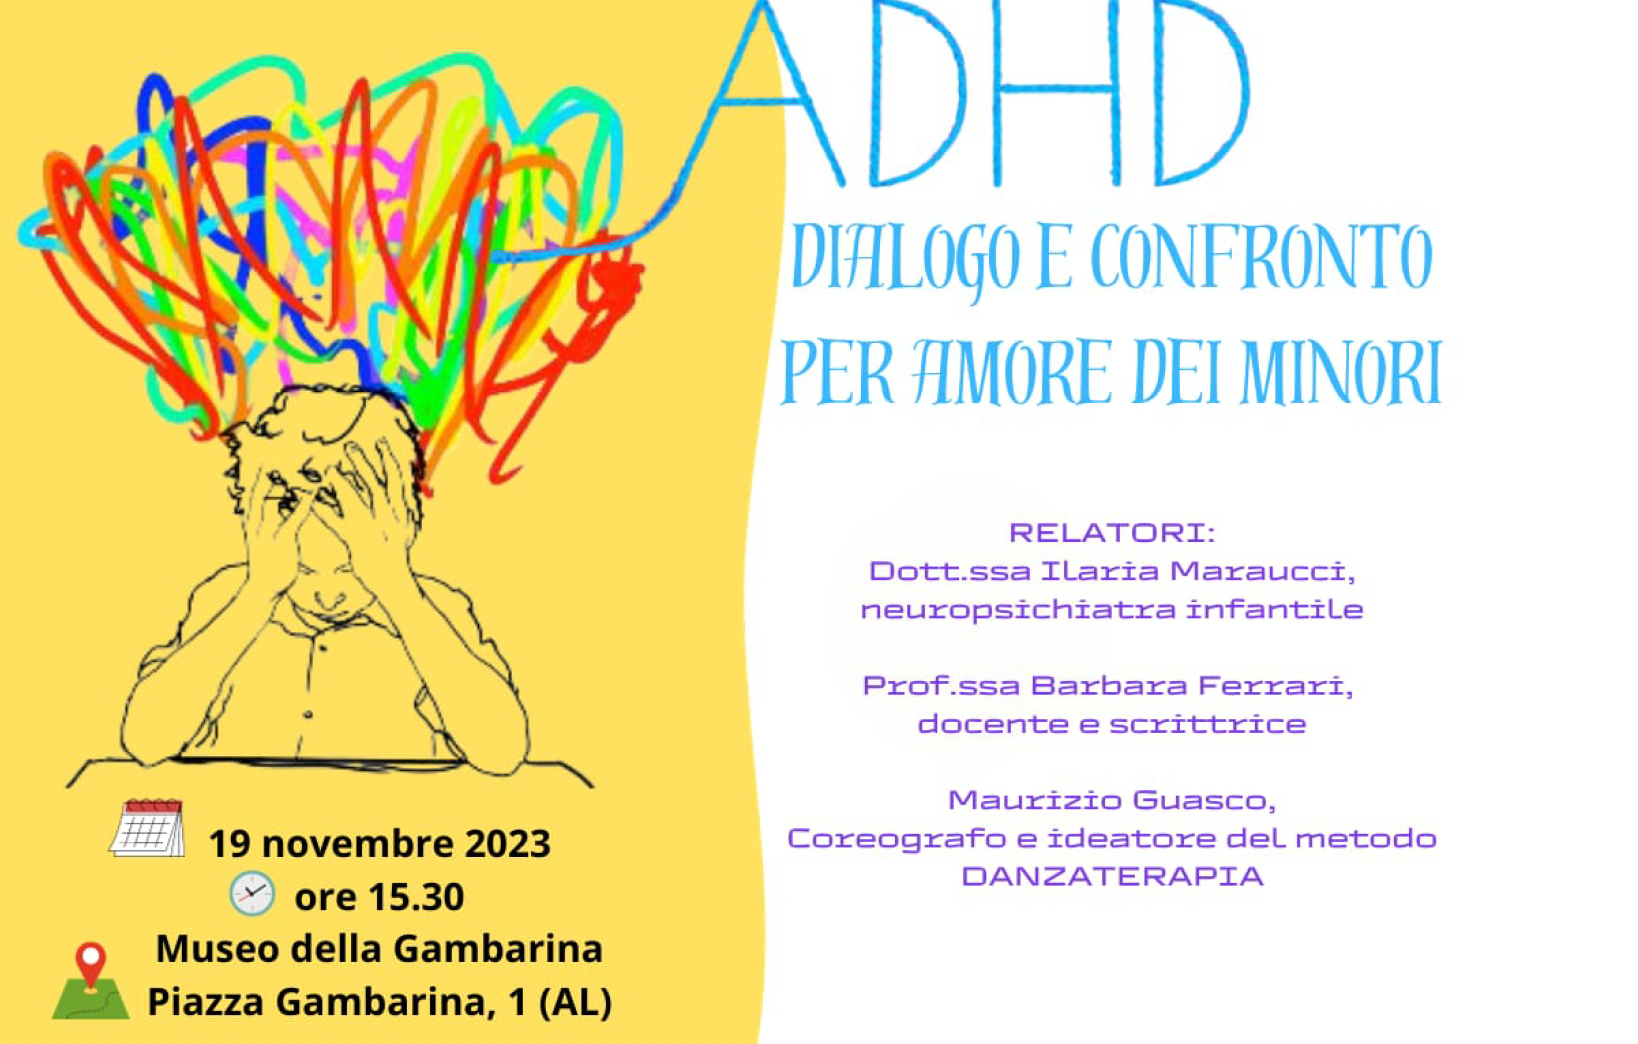 Convegno su ADHD: dialogo e confronto per amore dei minori 